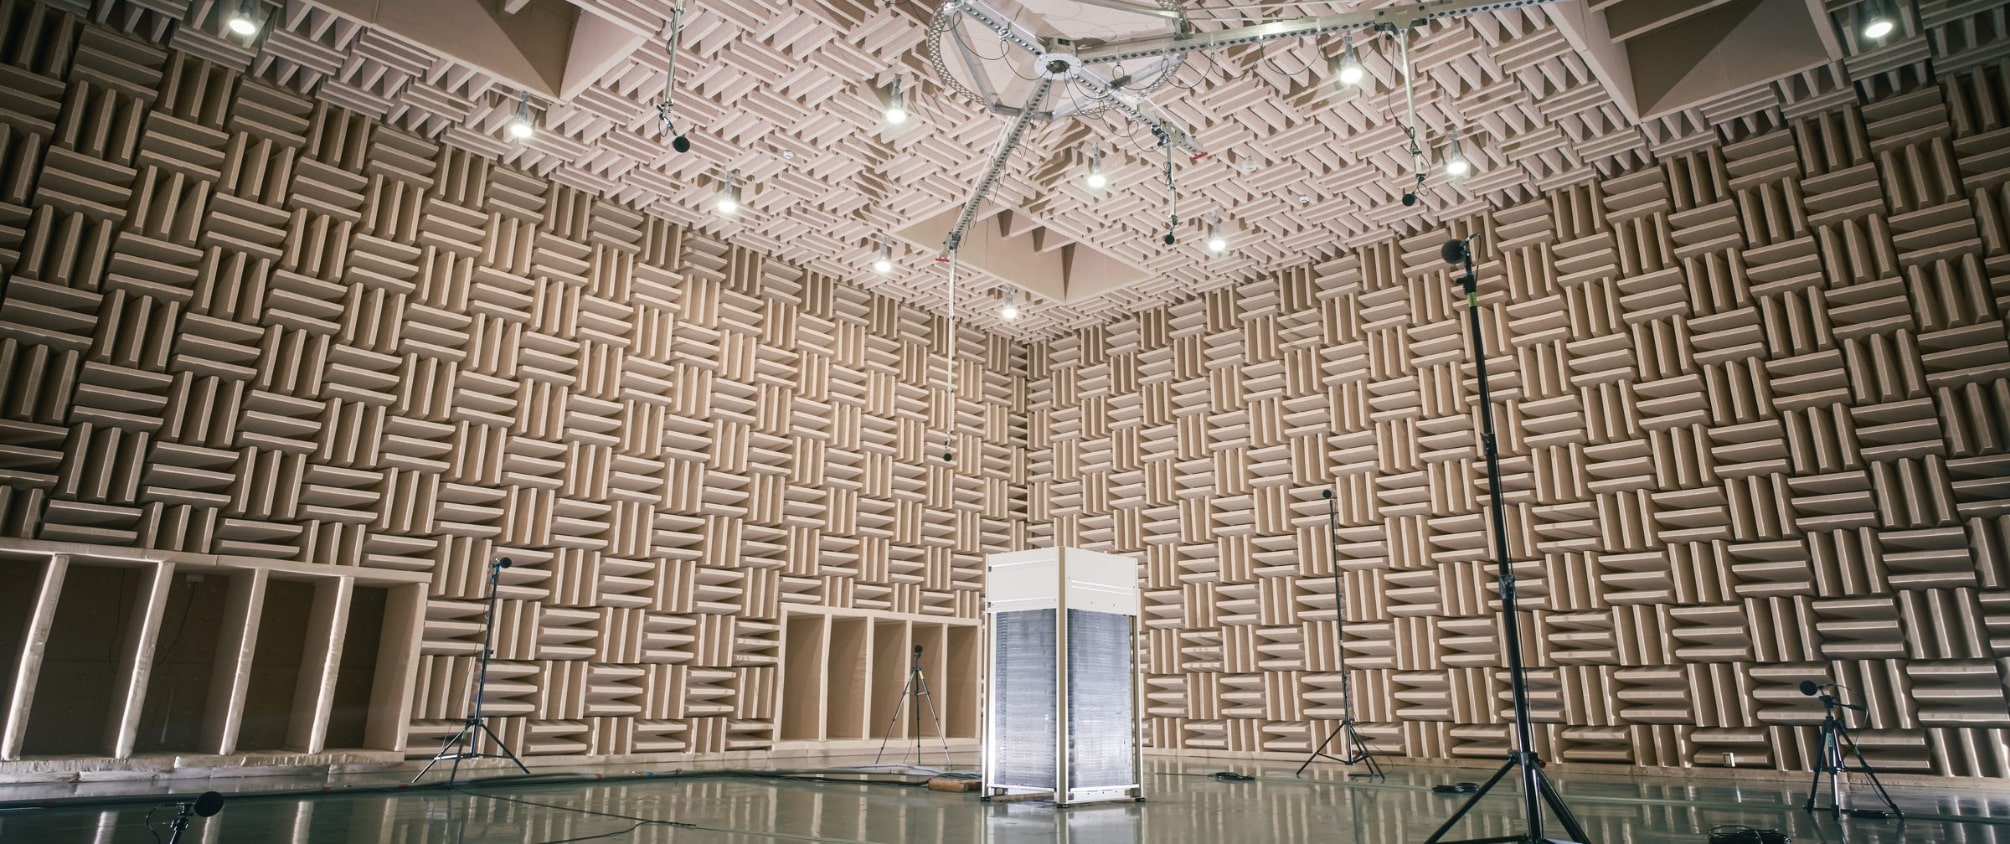 大型空調機用半無響音室でビル用マルチエアコン(VRF)室外機の騒音試験を行なっている画像